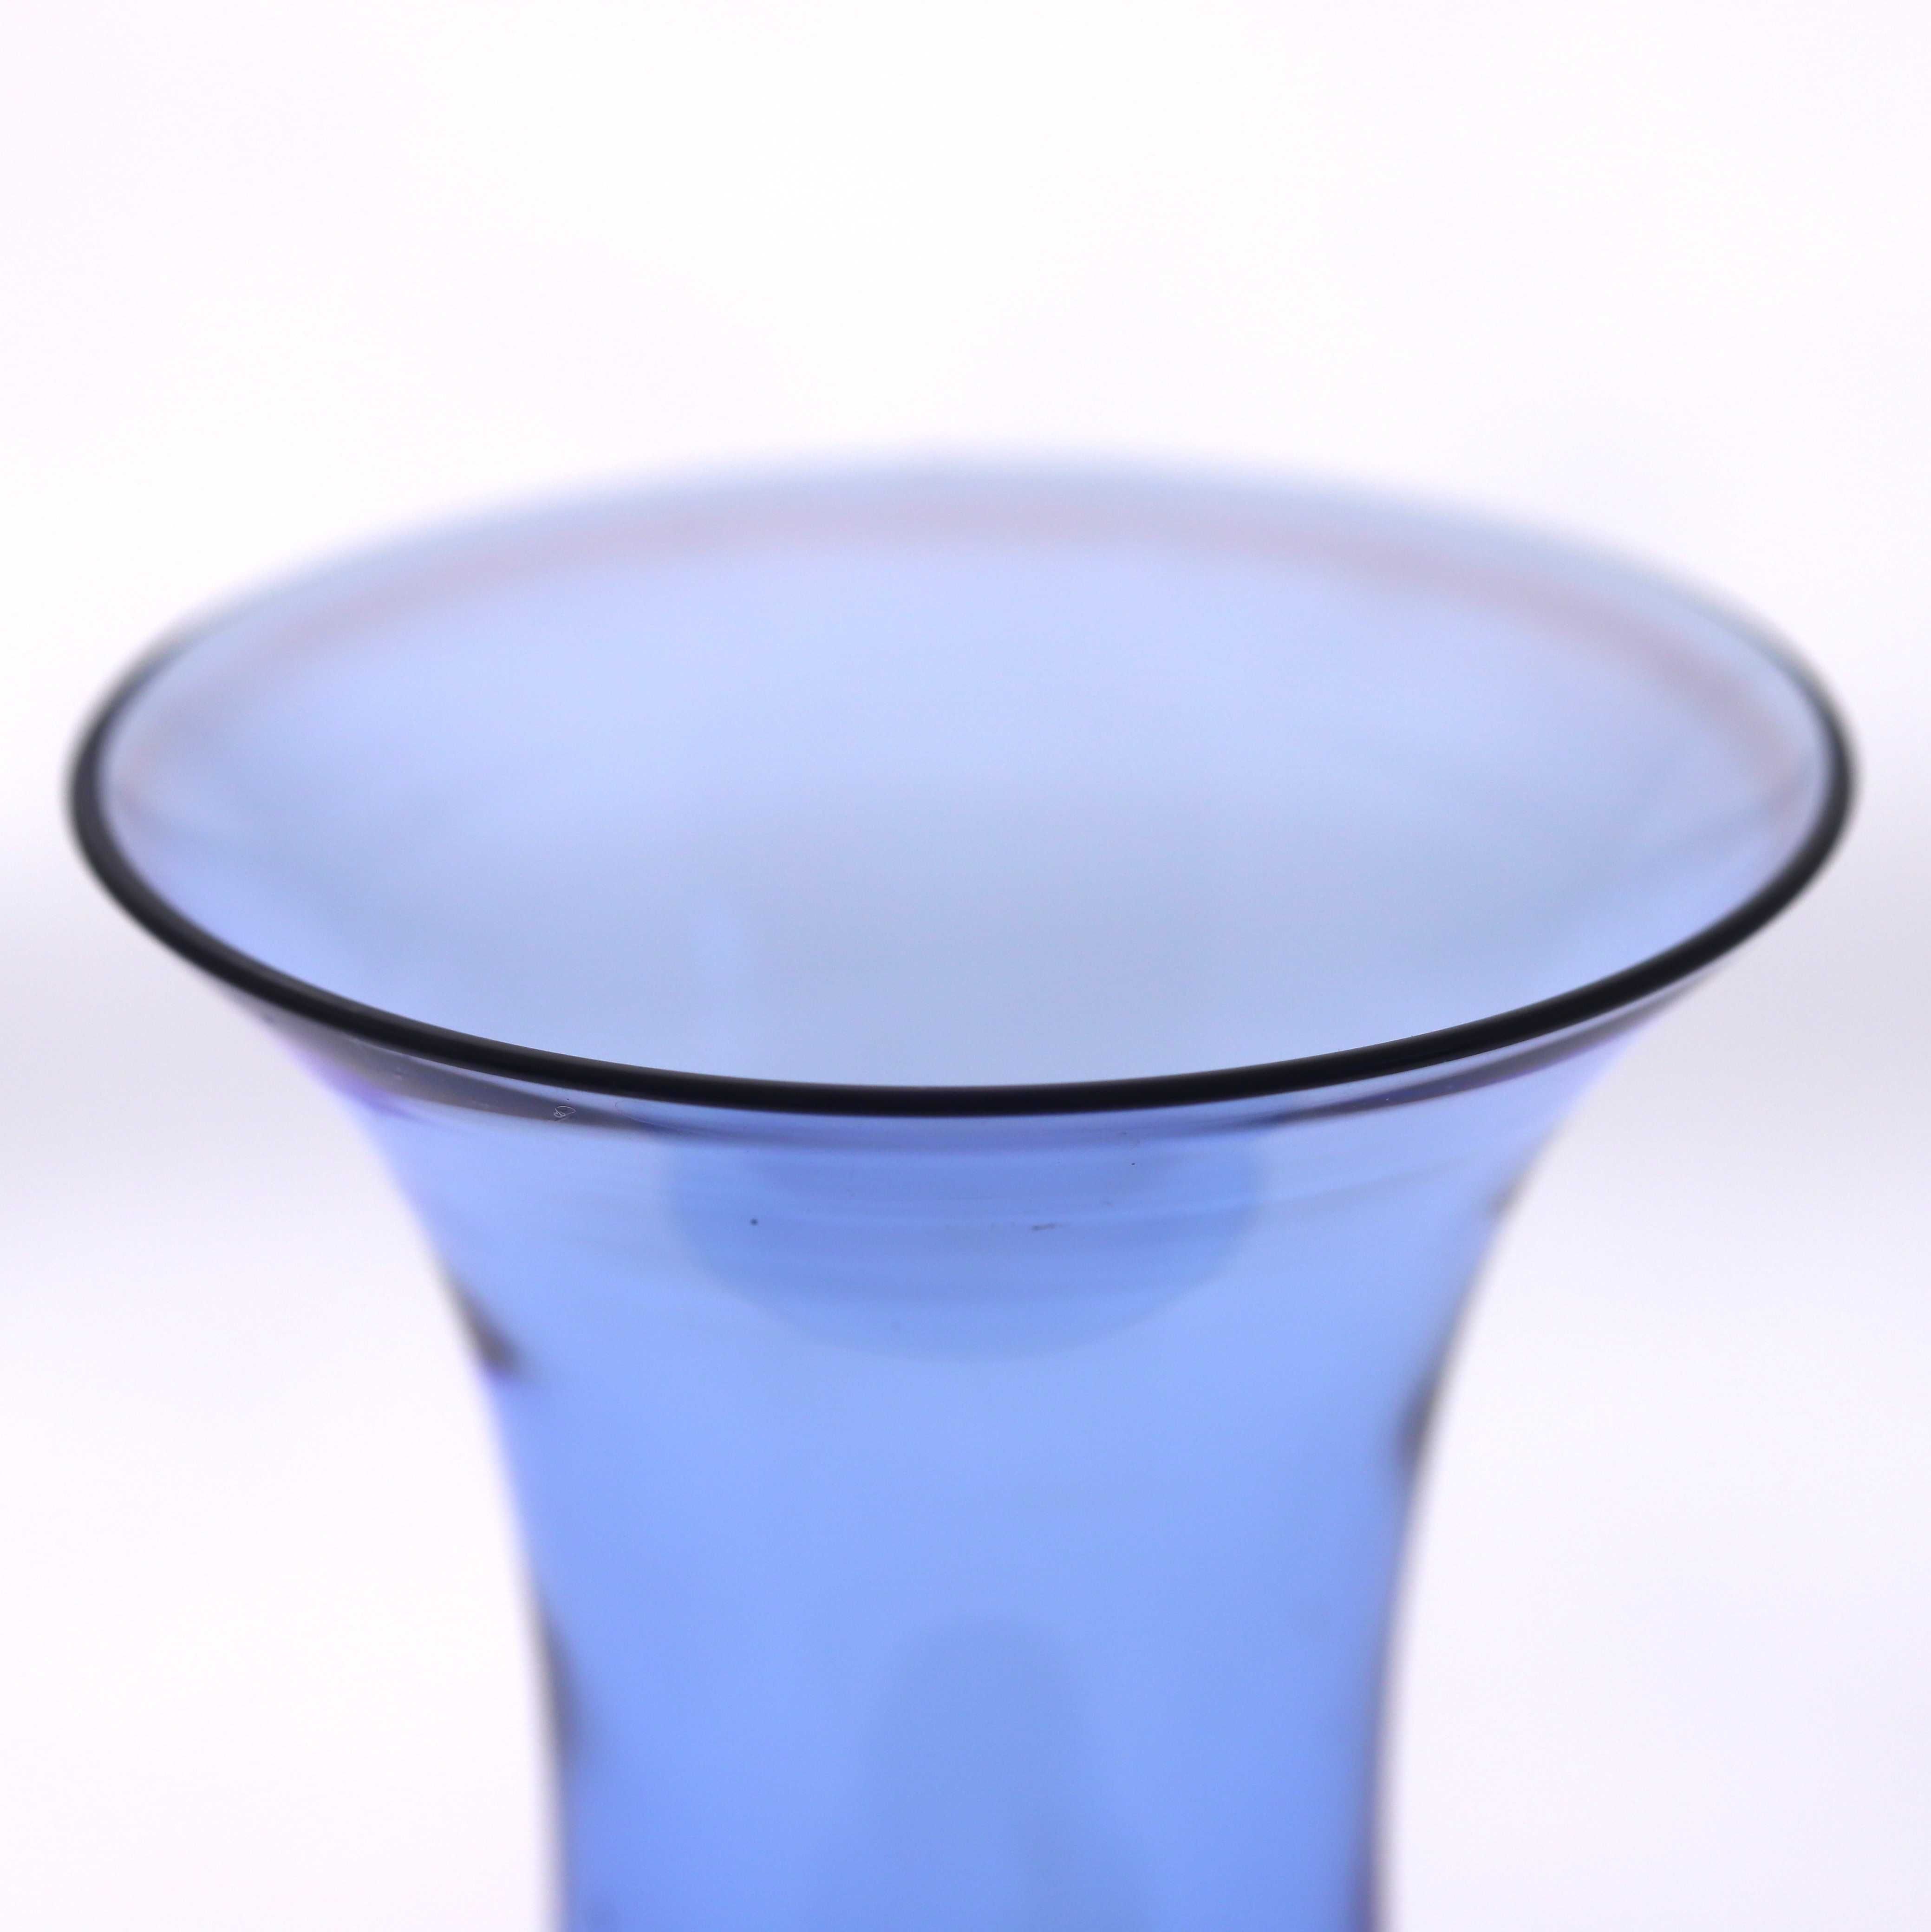 Błękitny kielich kieliszek wazon szkło vintage PRL POLSKI NEW LOOK